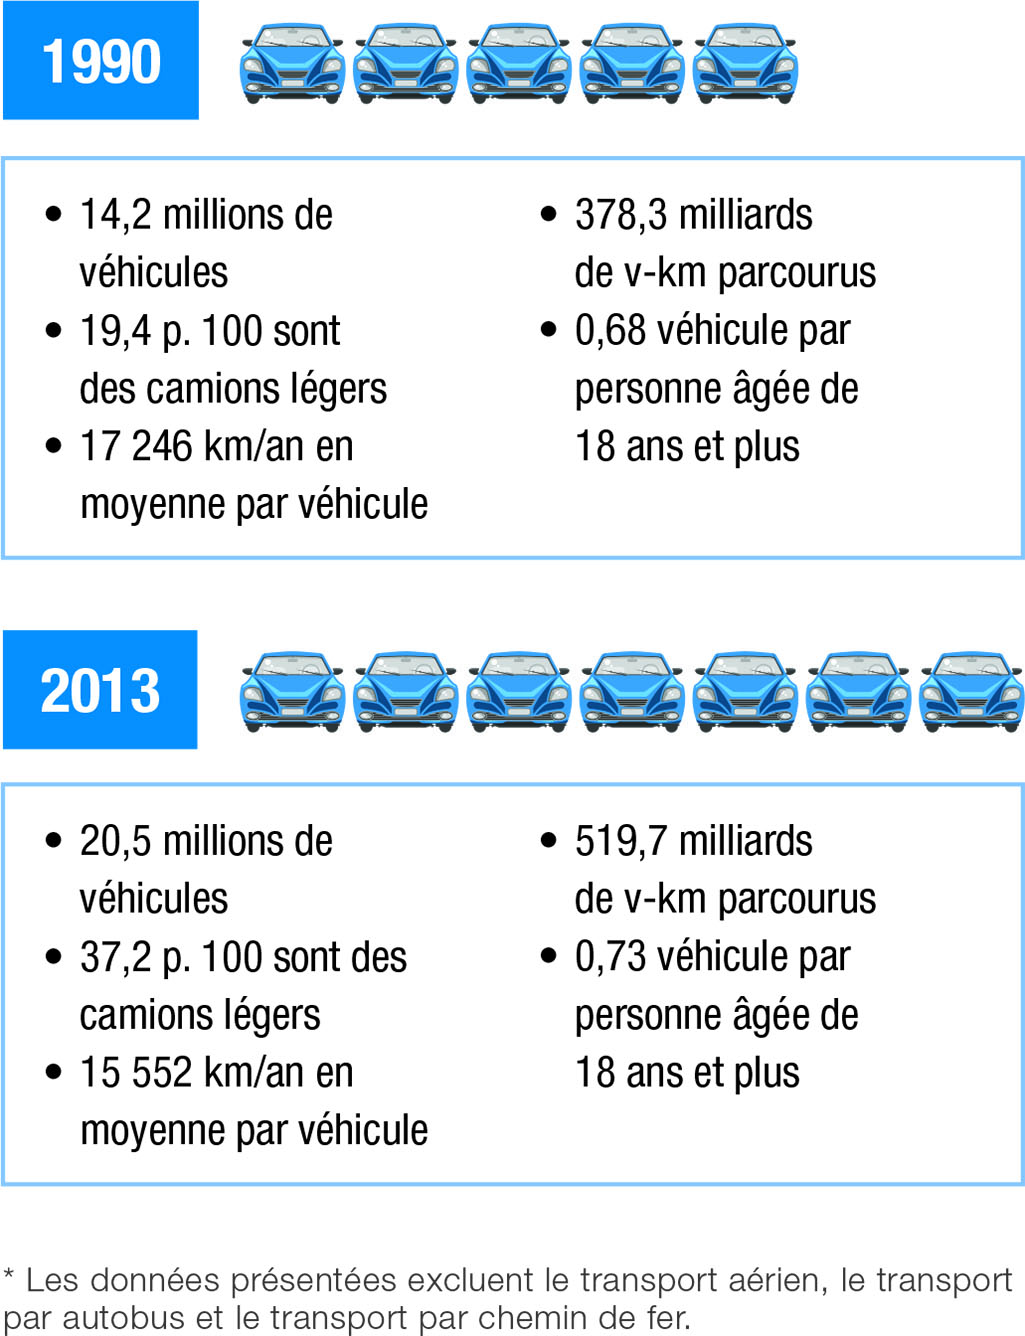 Indicateurs d’énergie liés au transport des voyageurs*, 1990 et 2013